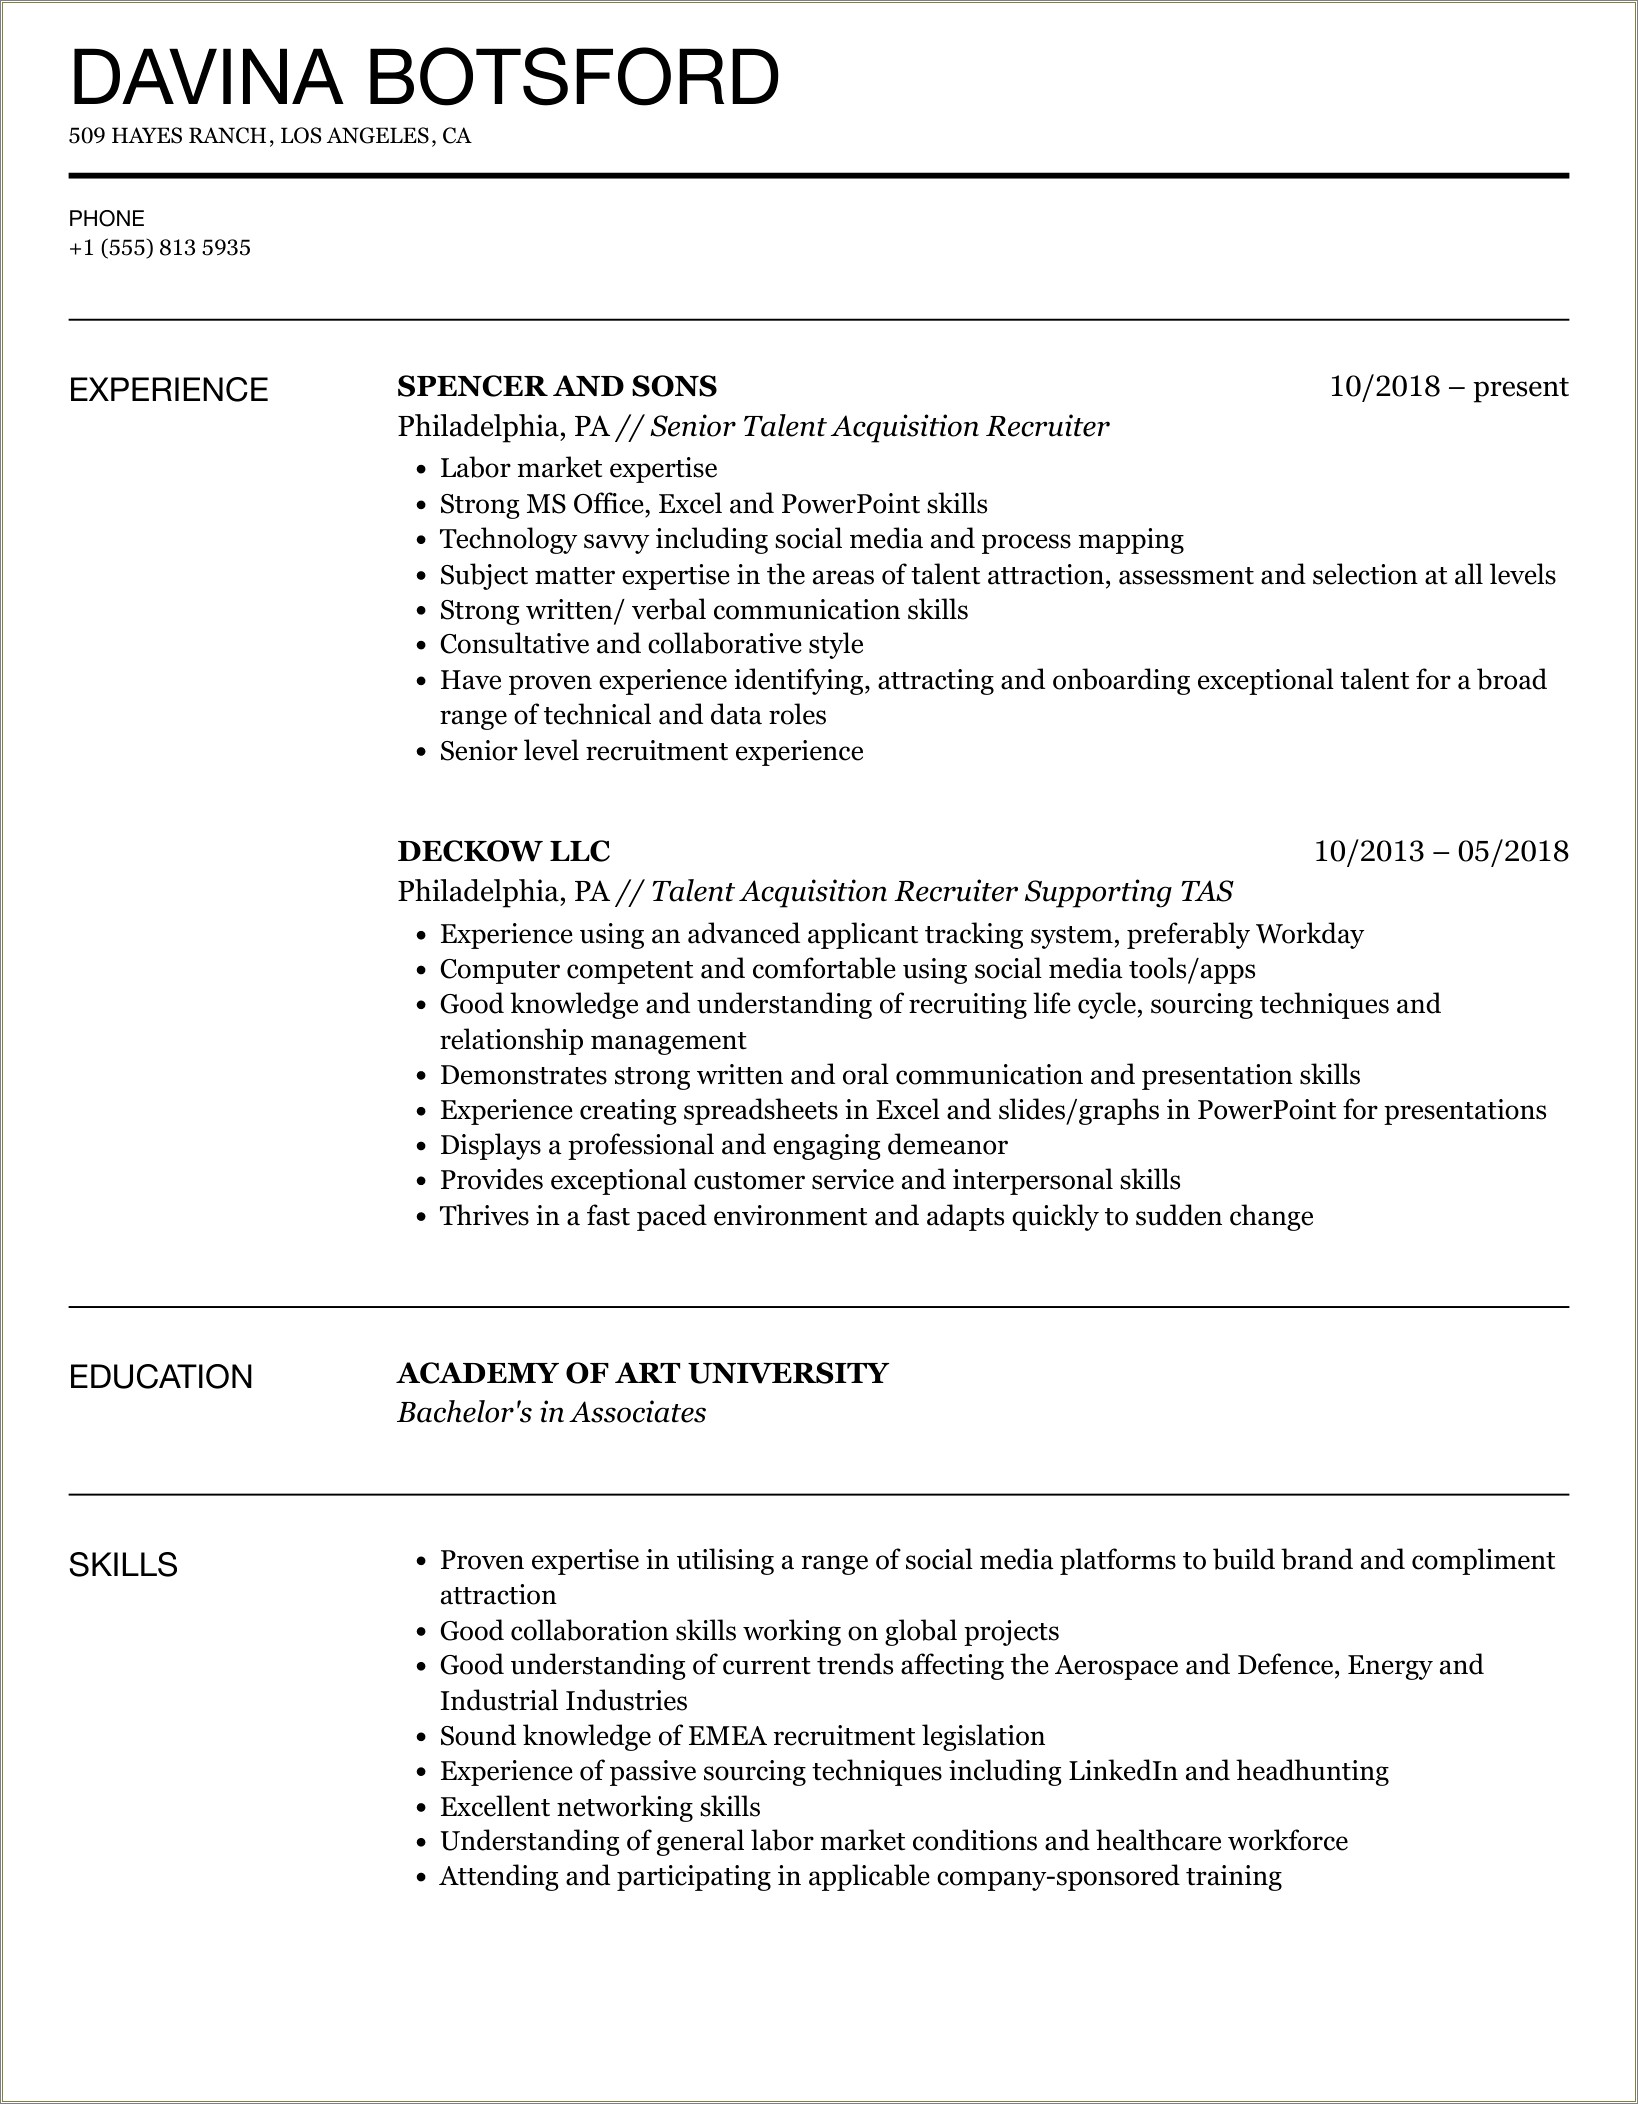 Sample Resume For Entry Level Recruiter Position